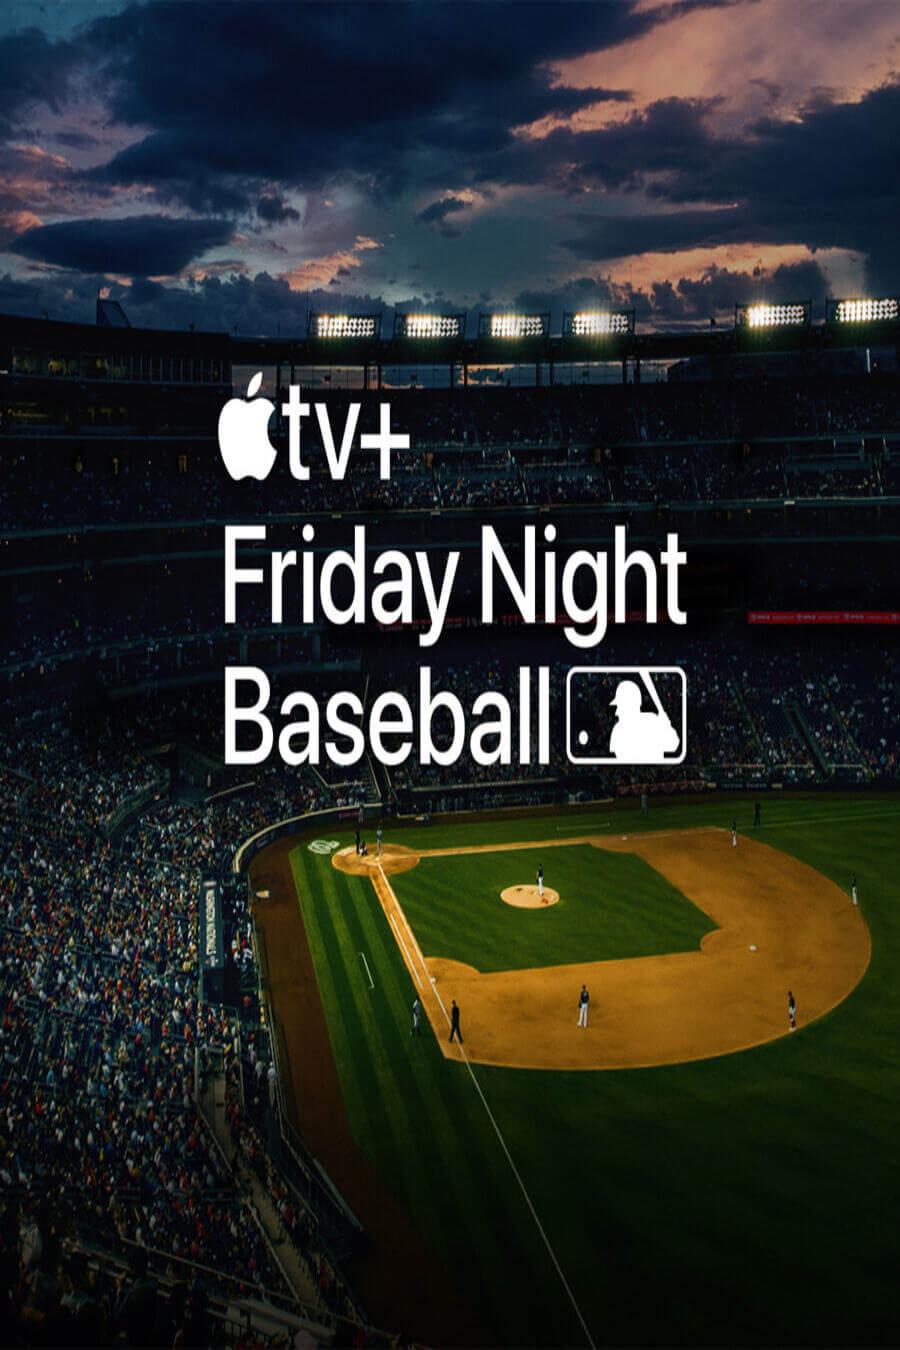 TV ratings for Friday Night Baseball in Noruega. Apple TV+ TV series